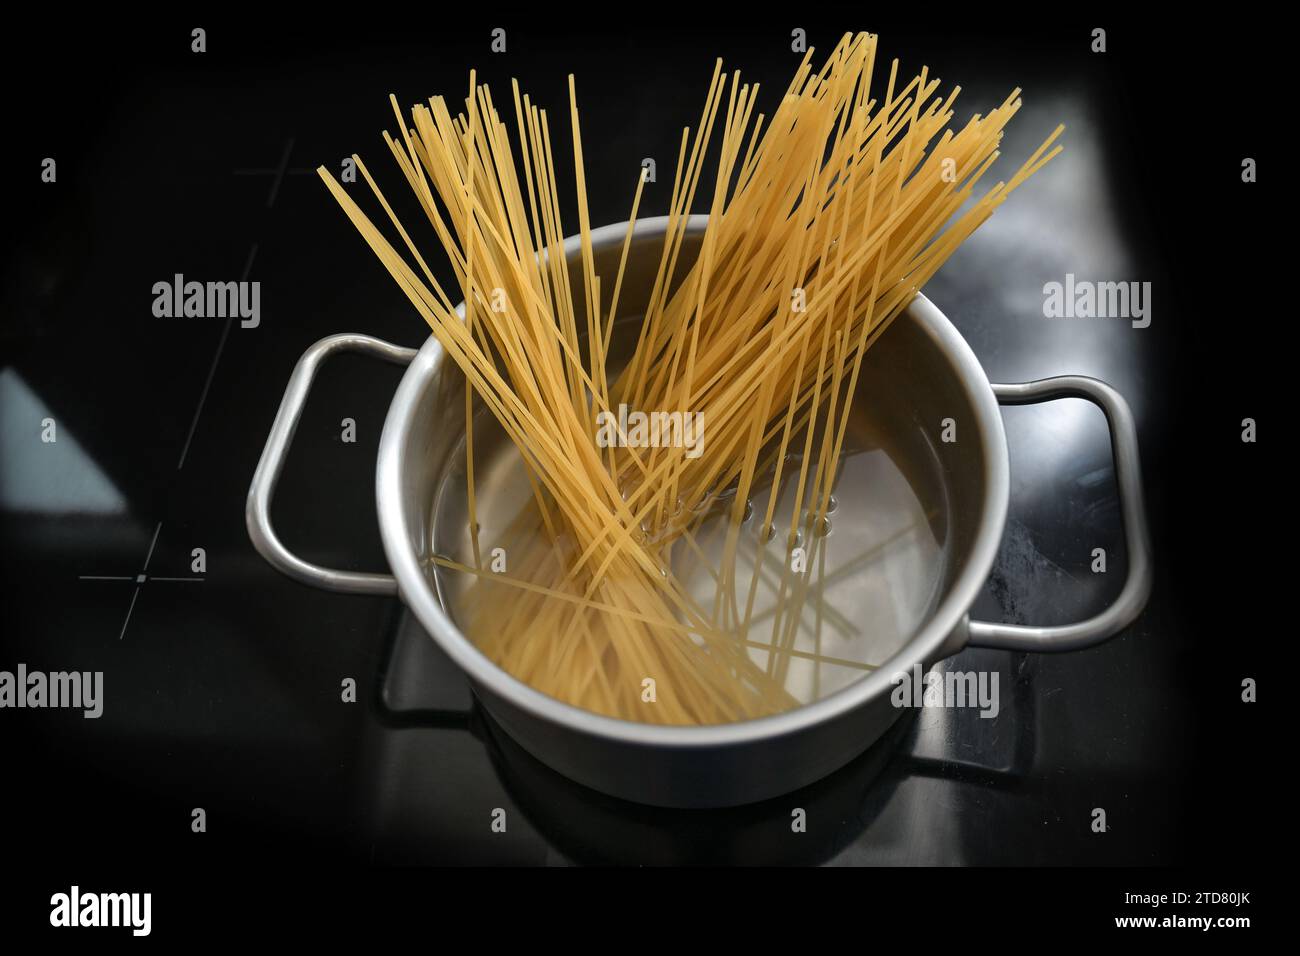 Spaghetti werden in einem Topf mit Wasser auf einem schwarzen Herd gekocht, Pasta kochen, Kopierraum, ausgewählter Fokus, geringe Schärfentiefe Stockfoto